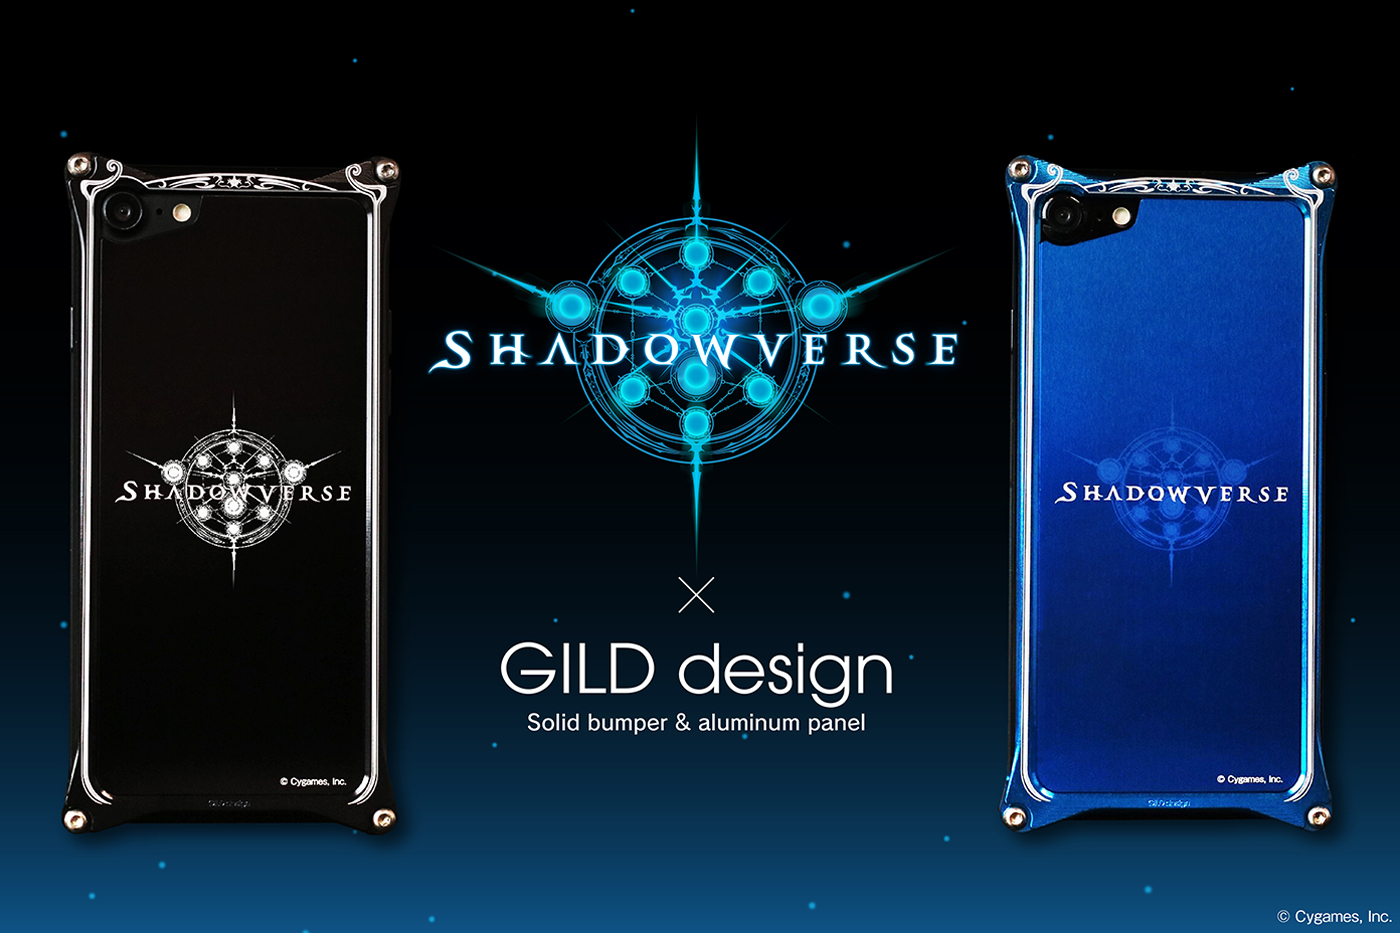 ギルドデザイン Shadowverse シャドウバース Gilddesign コラボレーションモデル ジュラルミン削り出しケース 発売のお知らせ